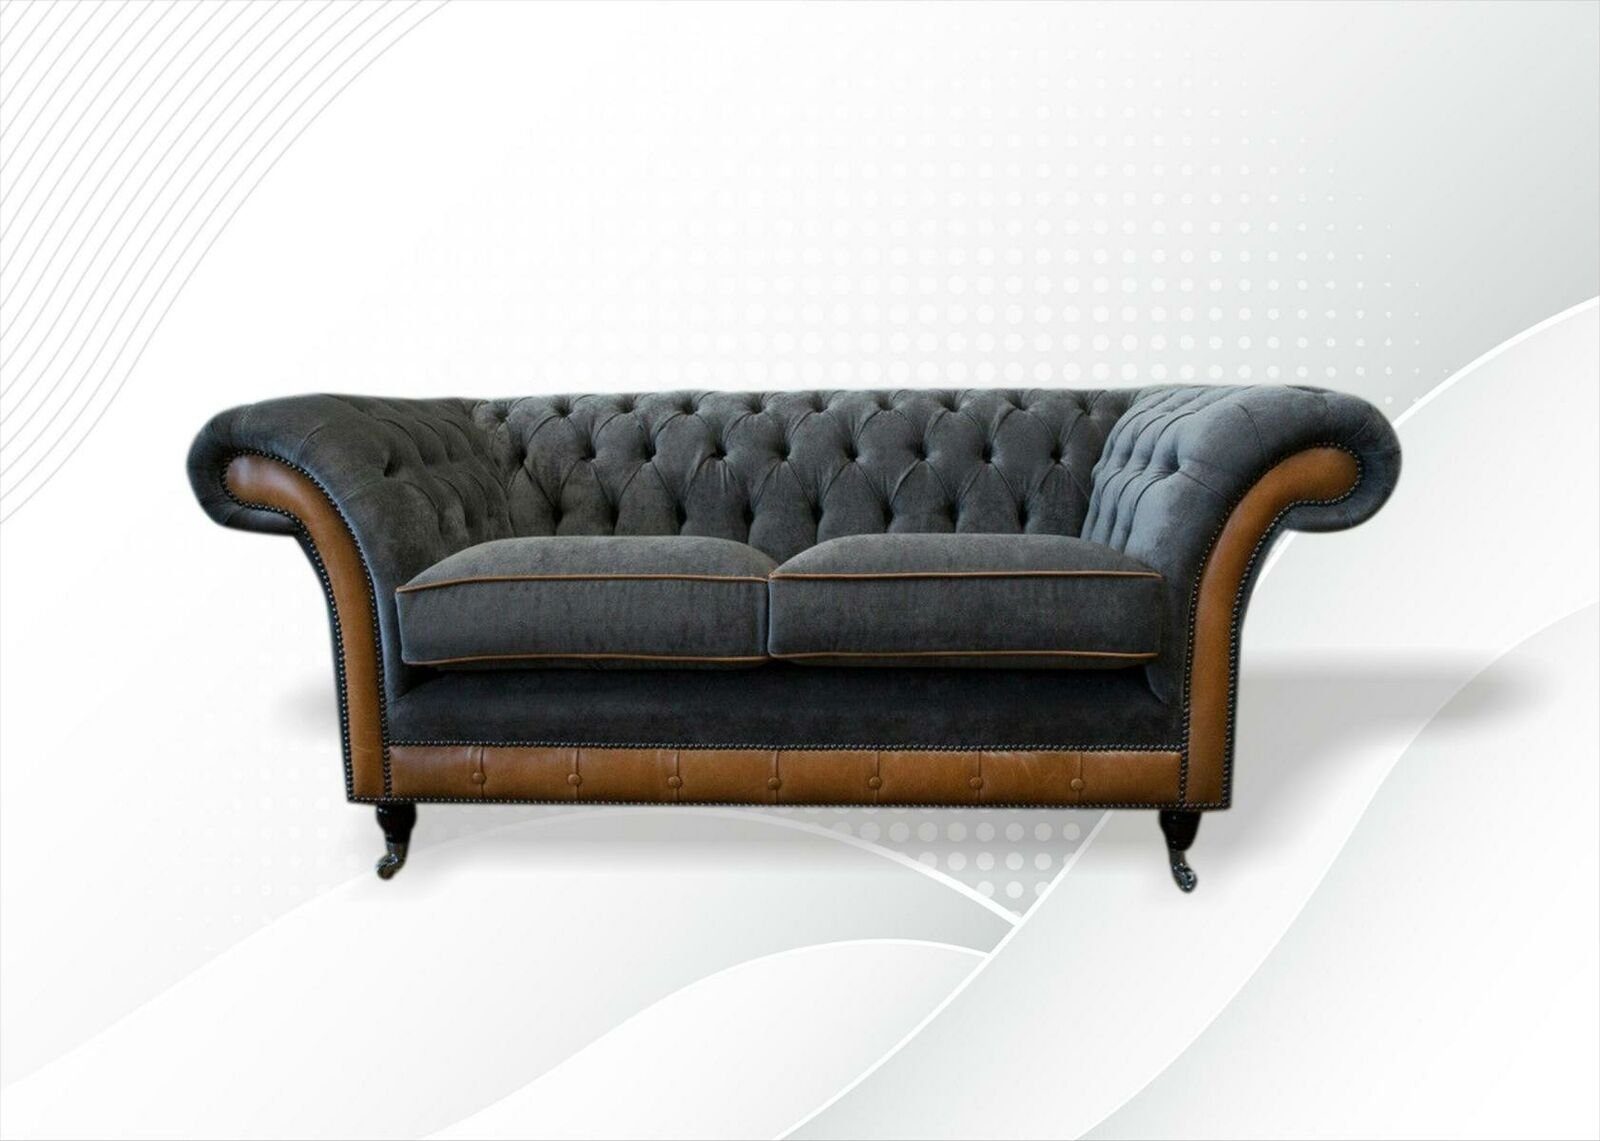 JVmoebel Chesterfield-Sofa Stilvoller Chesterfield 2 Sitzer Textilsofa Wohnzimmermöbel Neu, Made in Europe